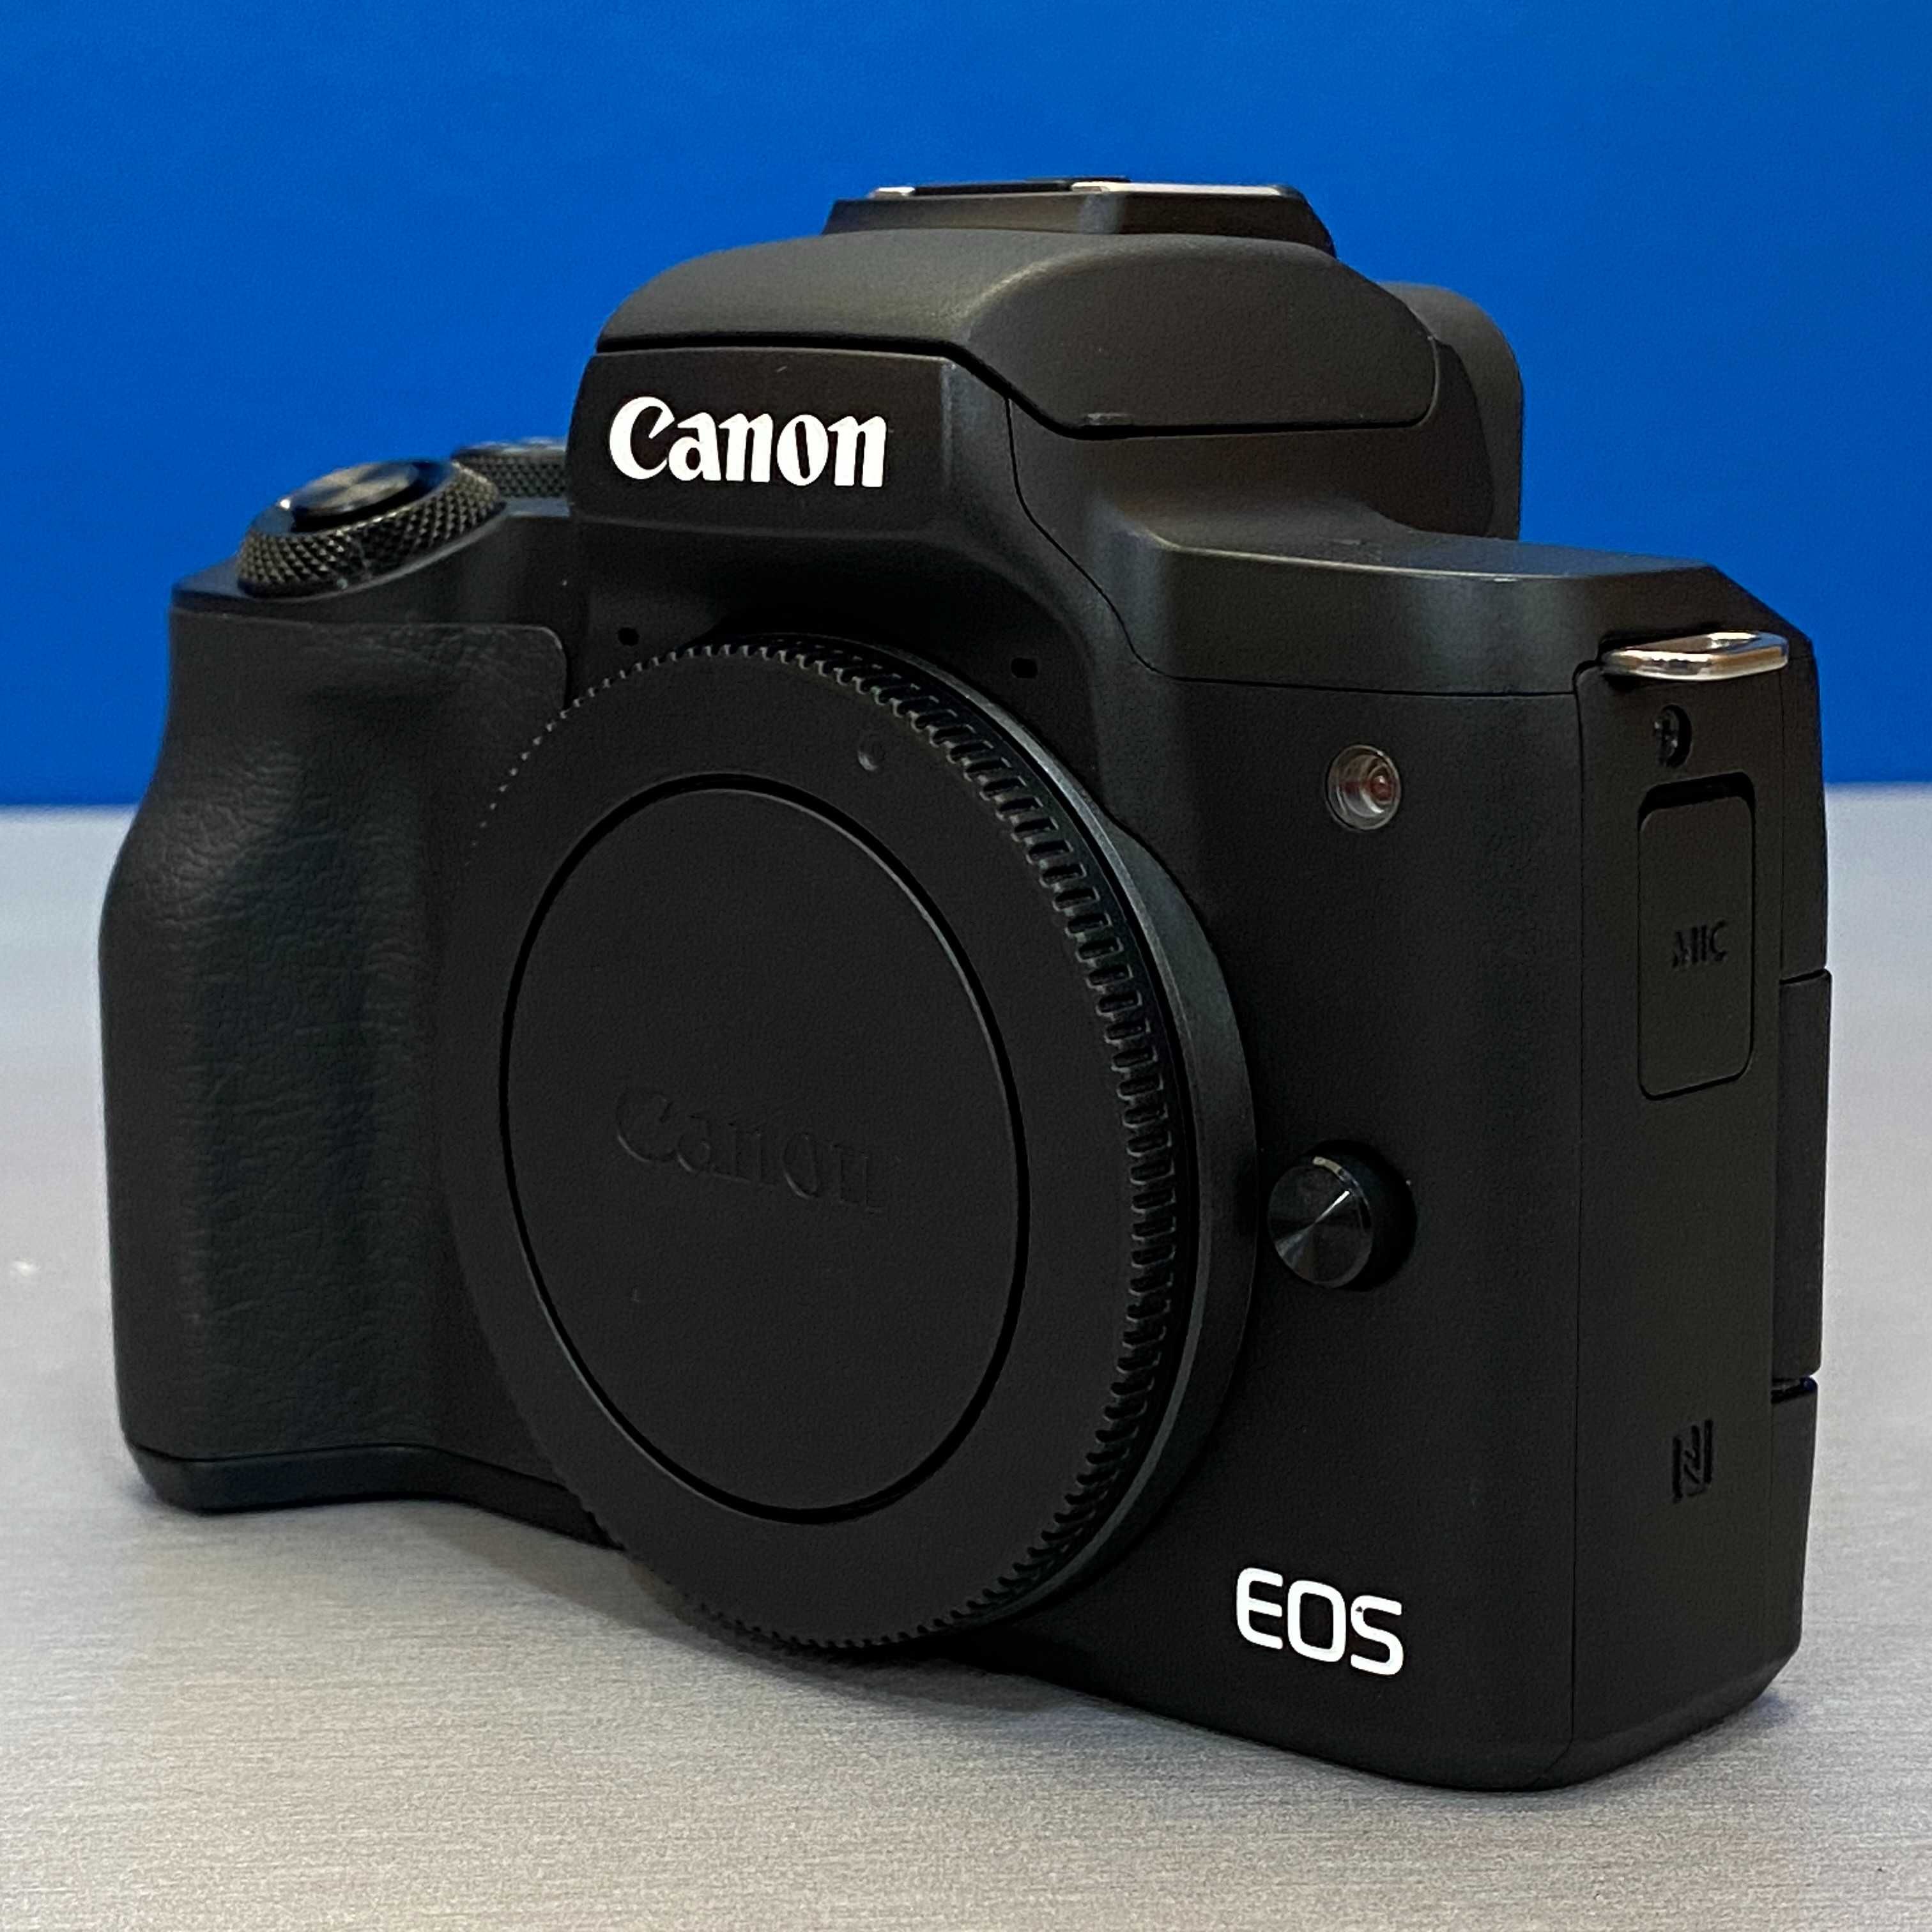 Canon EOS M50 (Corpo) - 24.1MP